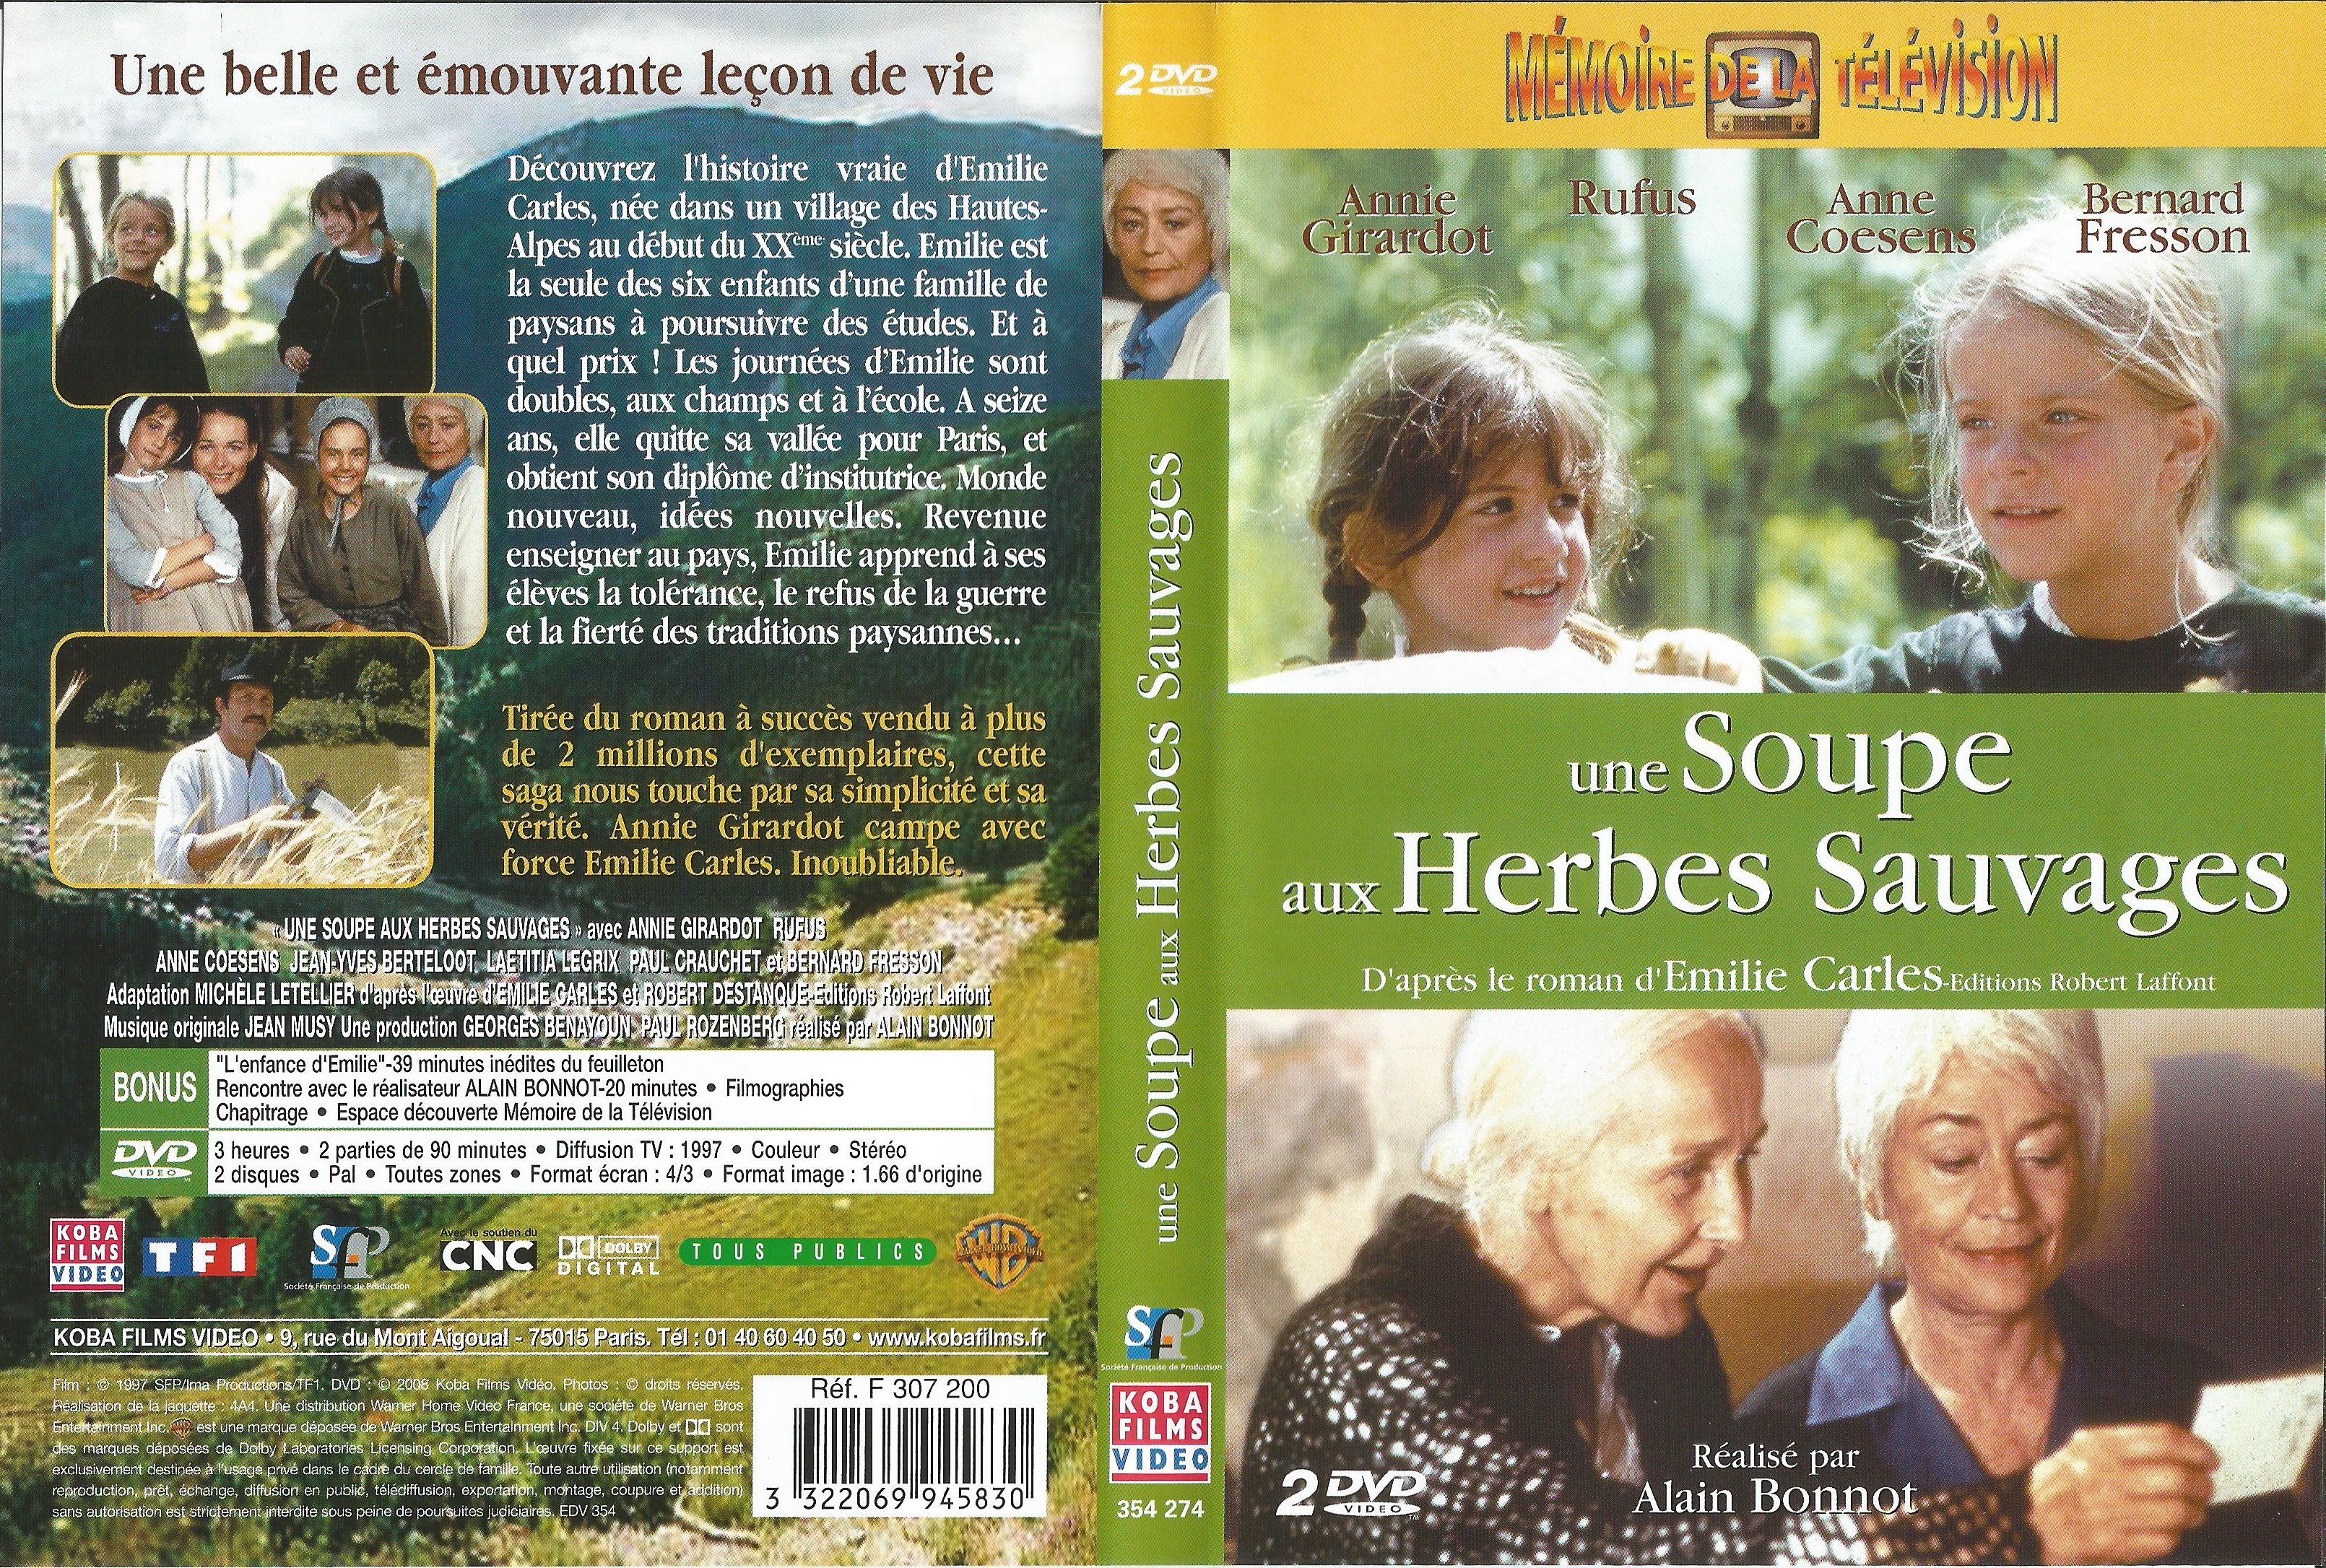 Jaquette DVD Une soupe aux herbes sauvages